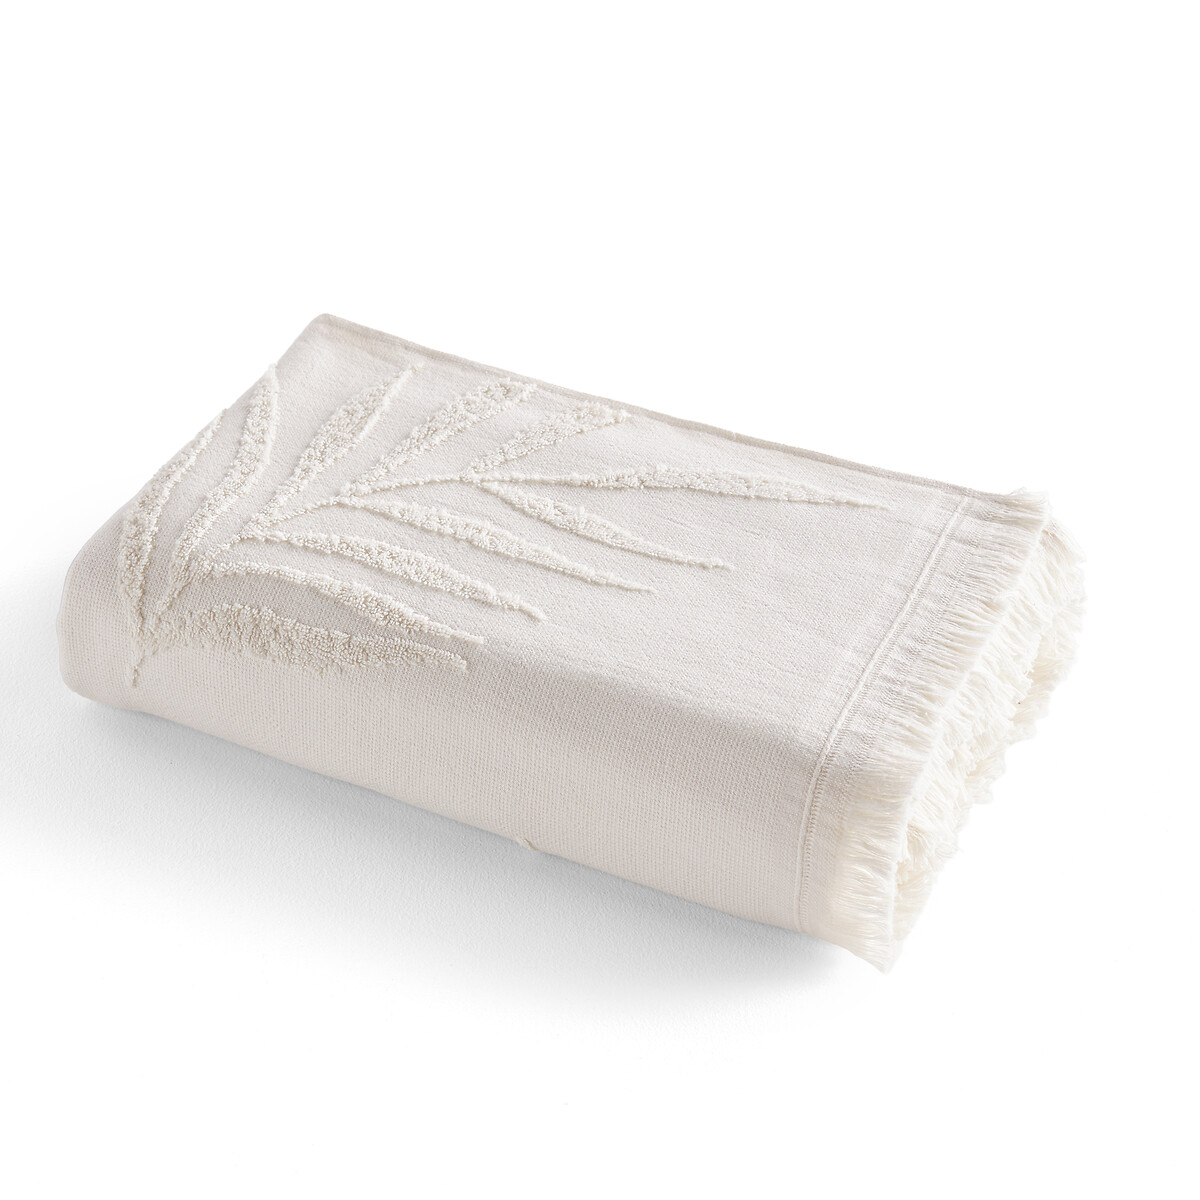 Полотенце банное из махровой ткани букле 500 гм Jobe  70 x 140 см бежевый LaRedoute, размер 70 x 140 см